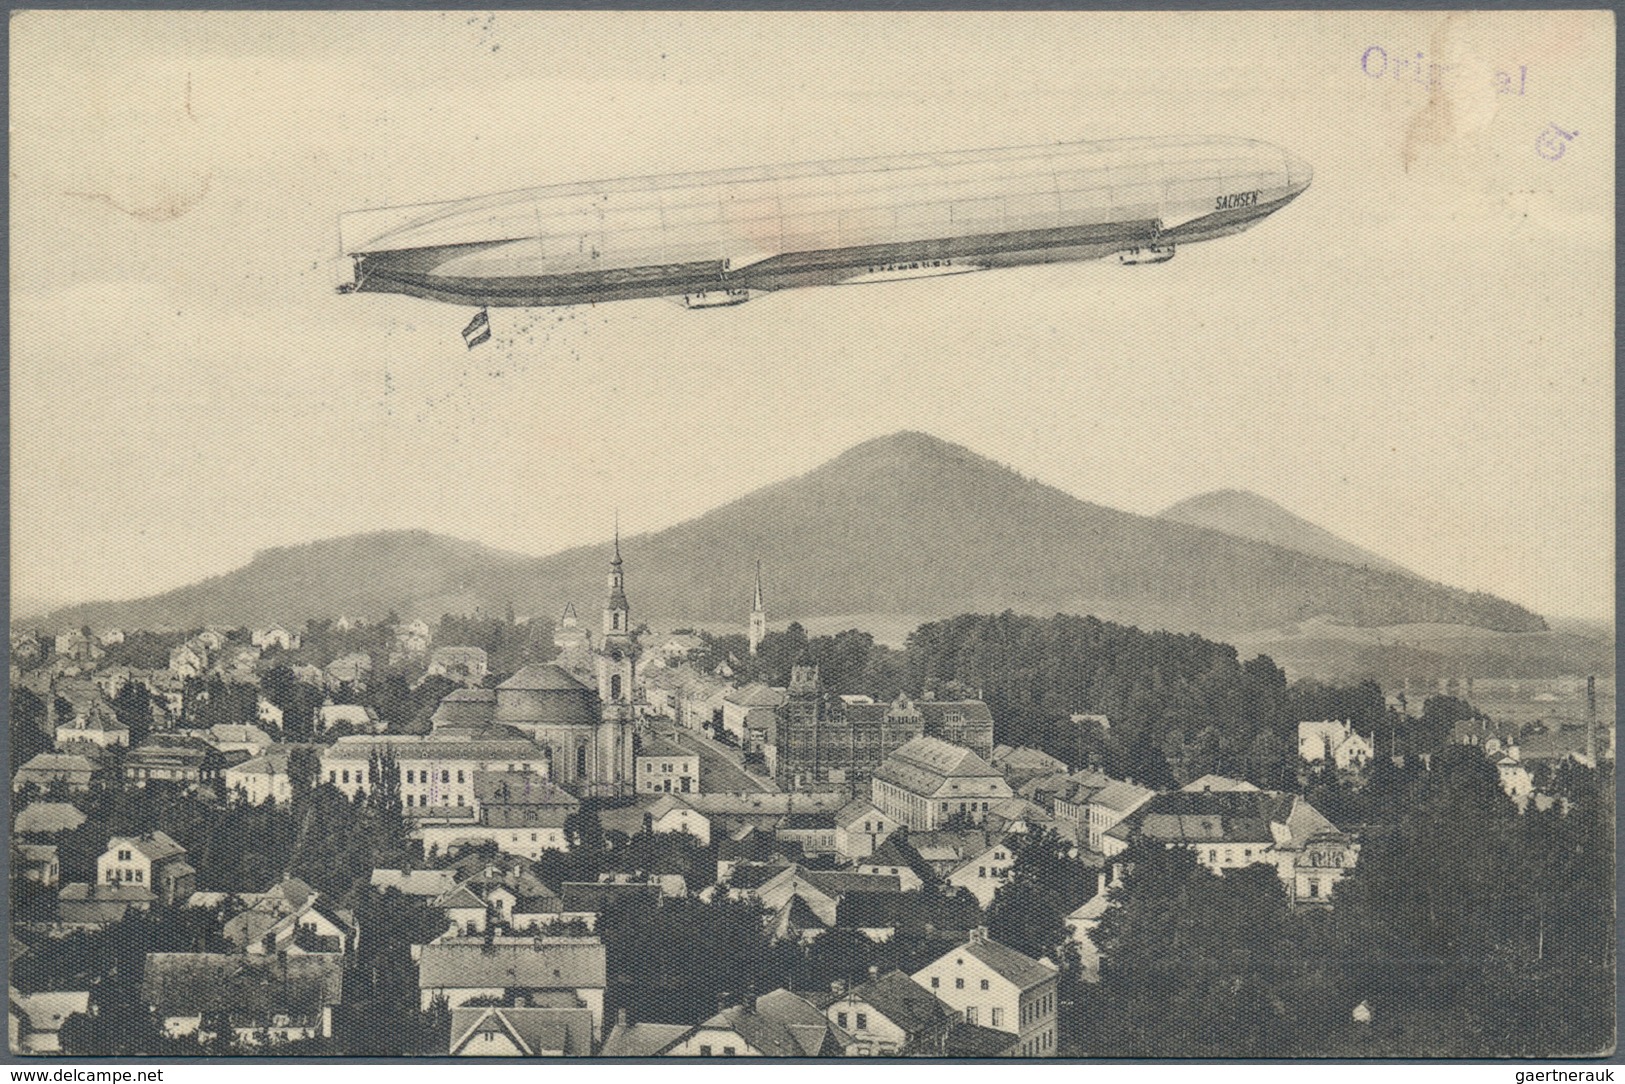 Österreich - Zeppelinpost: 1913, LZ 17 SACHSEN, 4 verschiedene 5 H Franz-Josef Privat-Ganzsachenkart